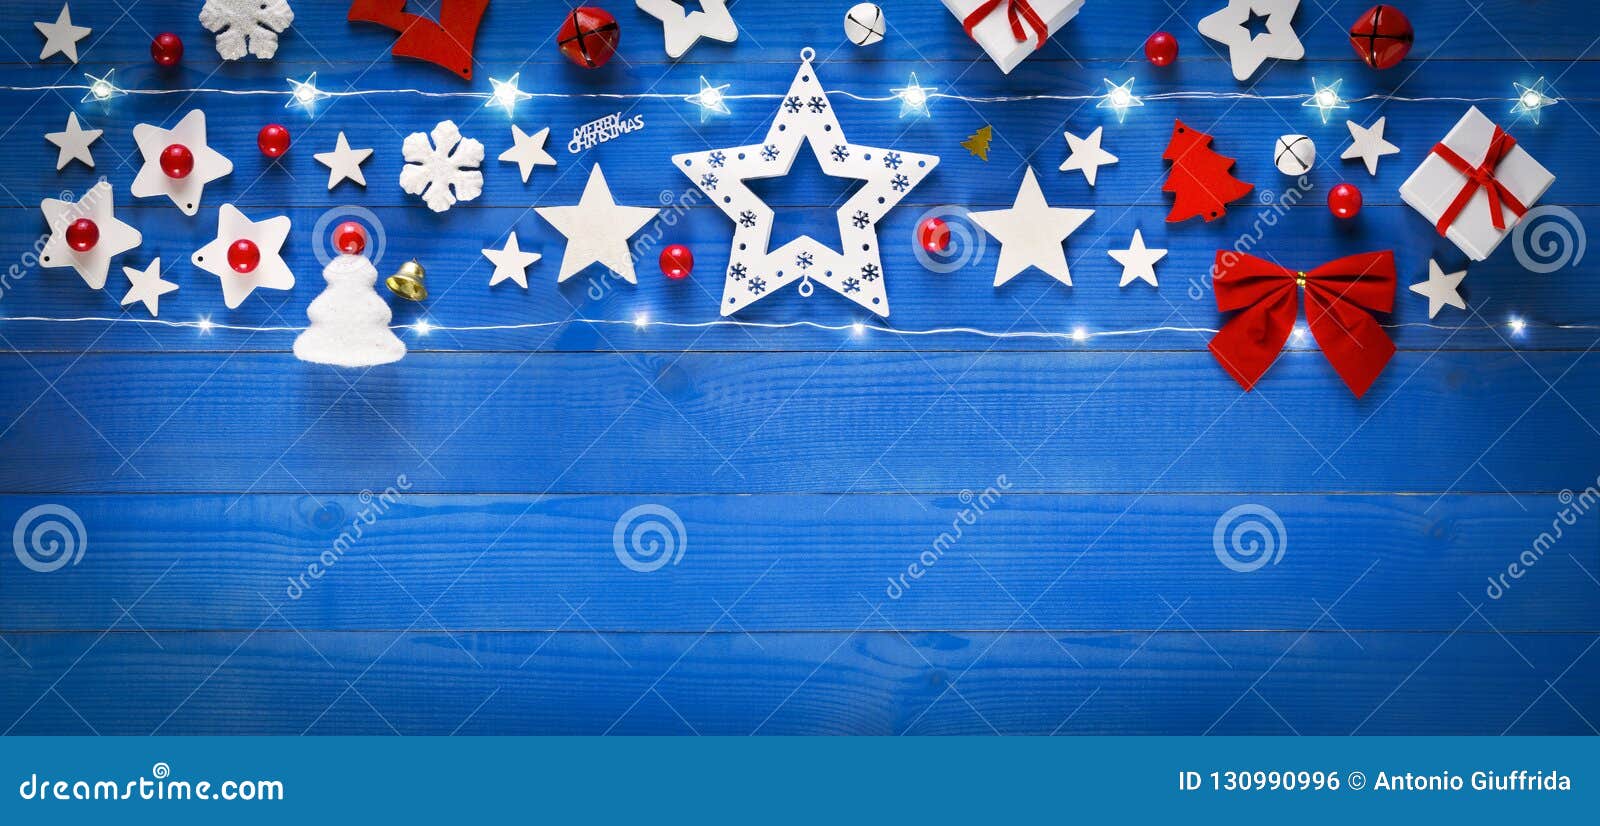 Weihnachtsfahne, Dekoration auf altem blauem Holztisch. Weihnachtsfahne, Dekoration auf altem blauem Bretterboden